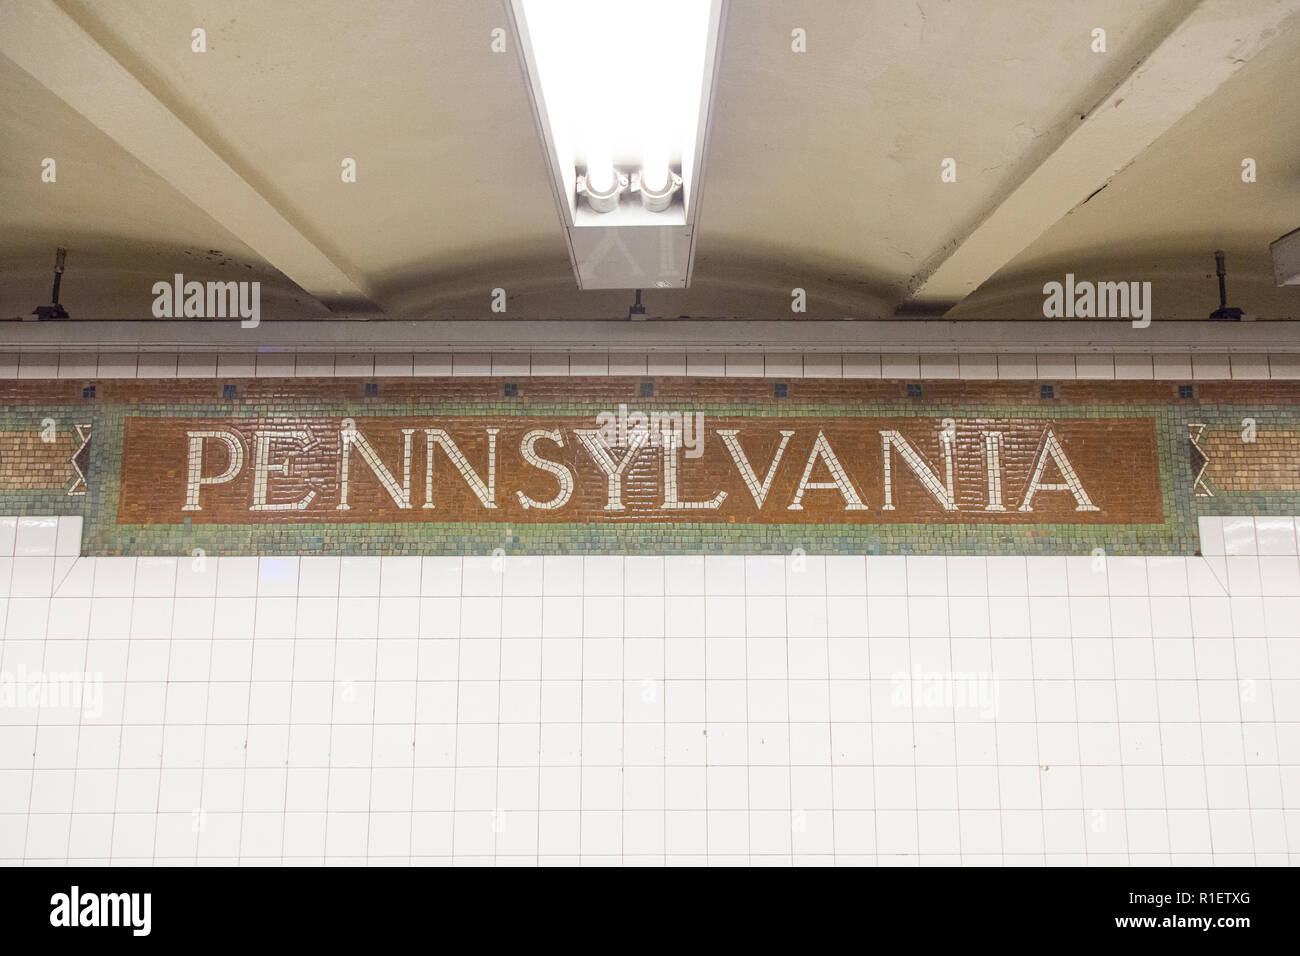 Mosaikzeichen für die Pennsylvania Station, New York City, Vereinigte Staaten von Amerika. Stockfoto